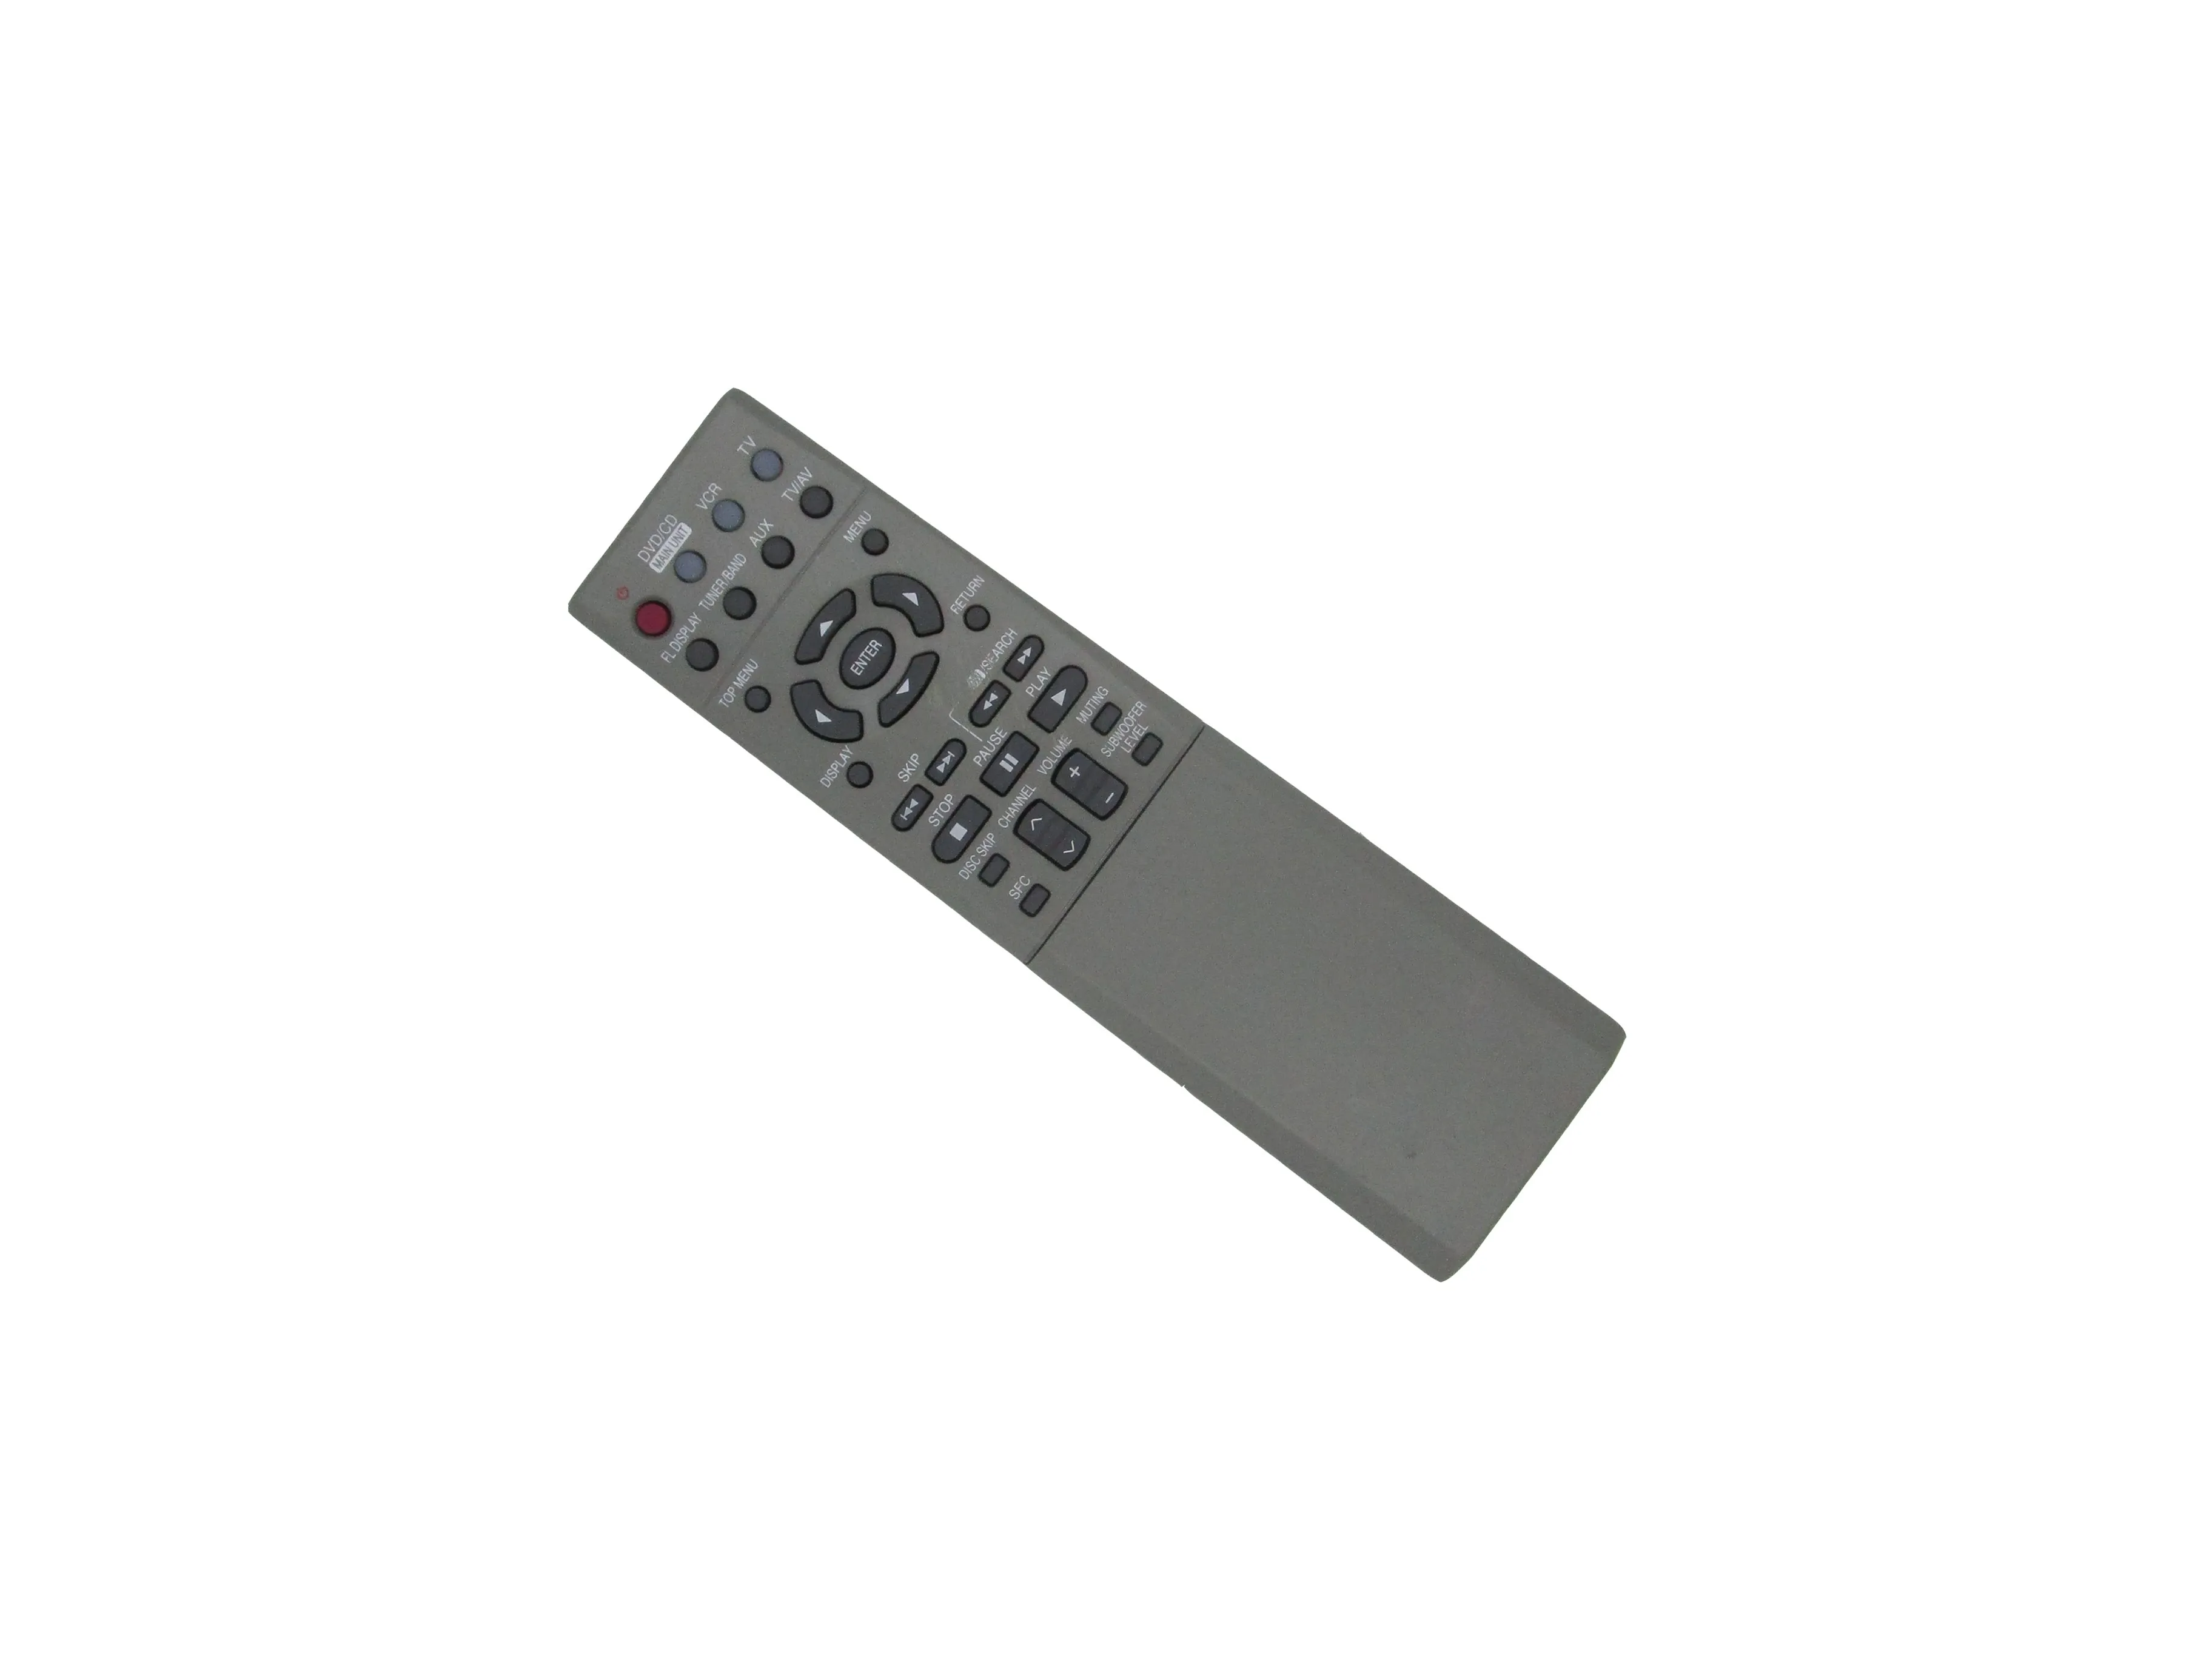 

Пульт дистанционного управления для Panasonic EUR7623XD0 SA-HT650 SA-HT650P SC-HT650 DVD звуковая система для домашнего кинотеатра